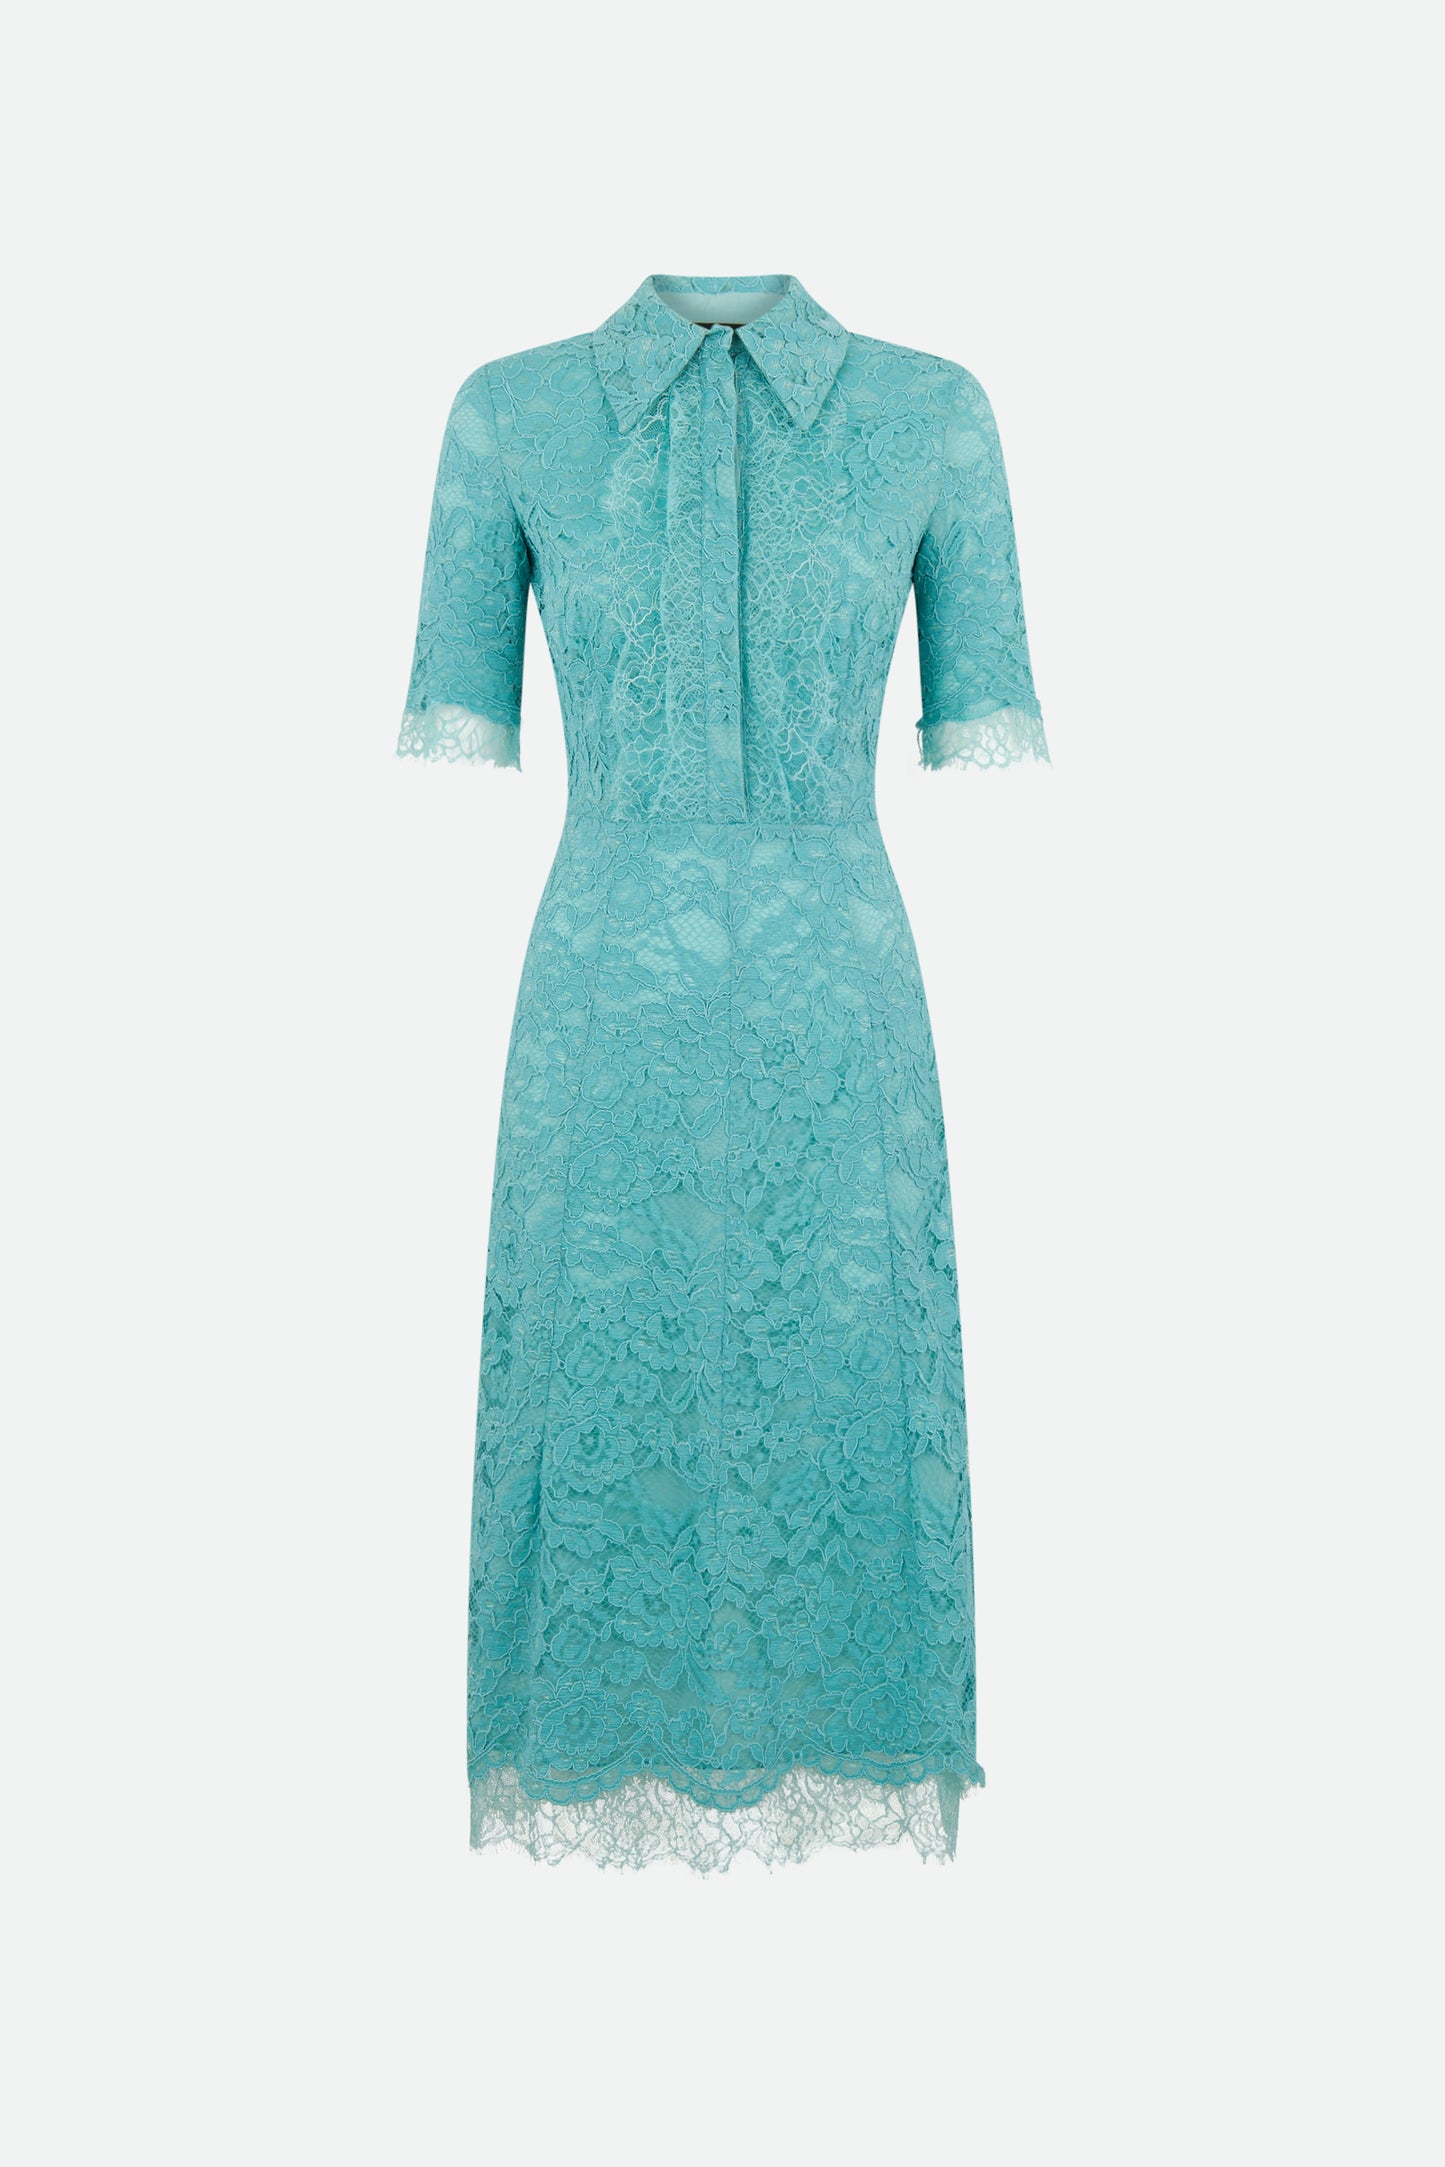 Elisabetta Franchi Light Blue Lace Dress